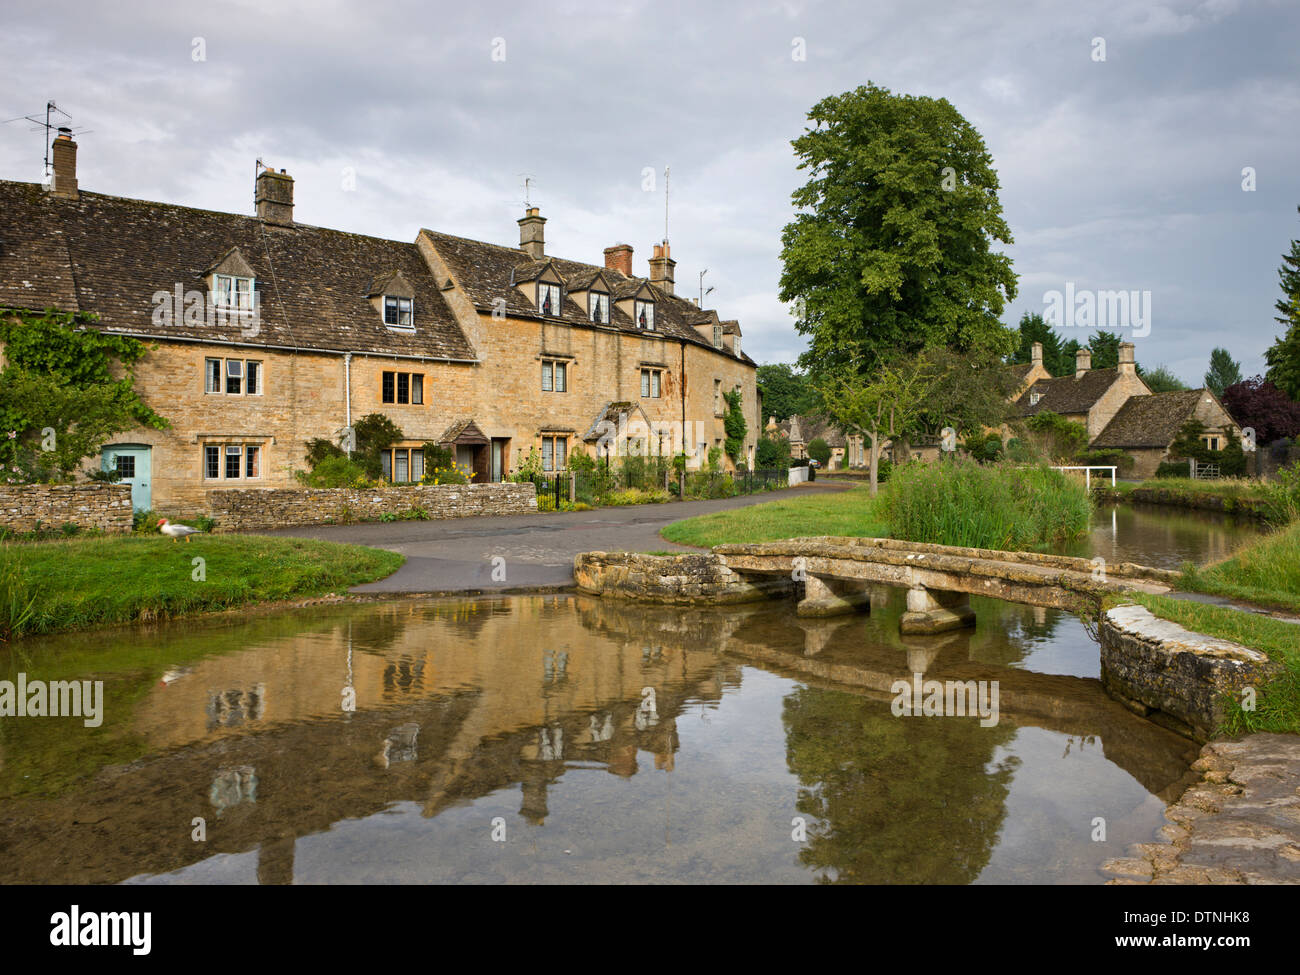 Ferienhäuser und Fußgängerbrücke über den Fluss Auge in den Cotswolds Dorf von Lower Slaughter, Gloucestershire, England. Stockfoto